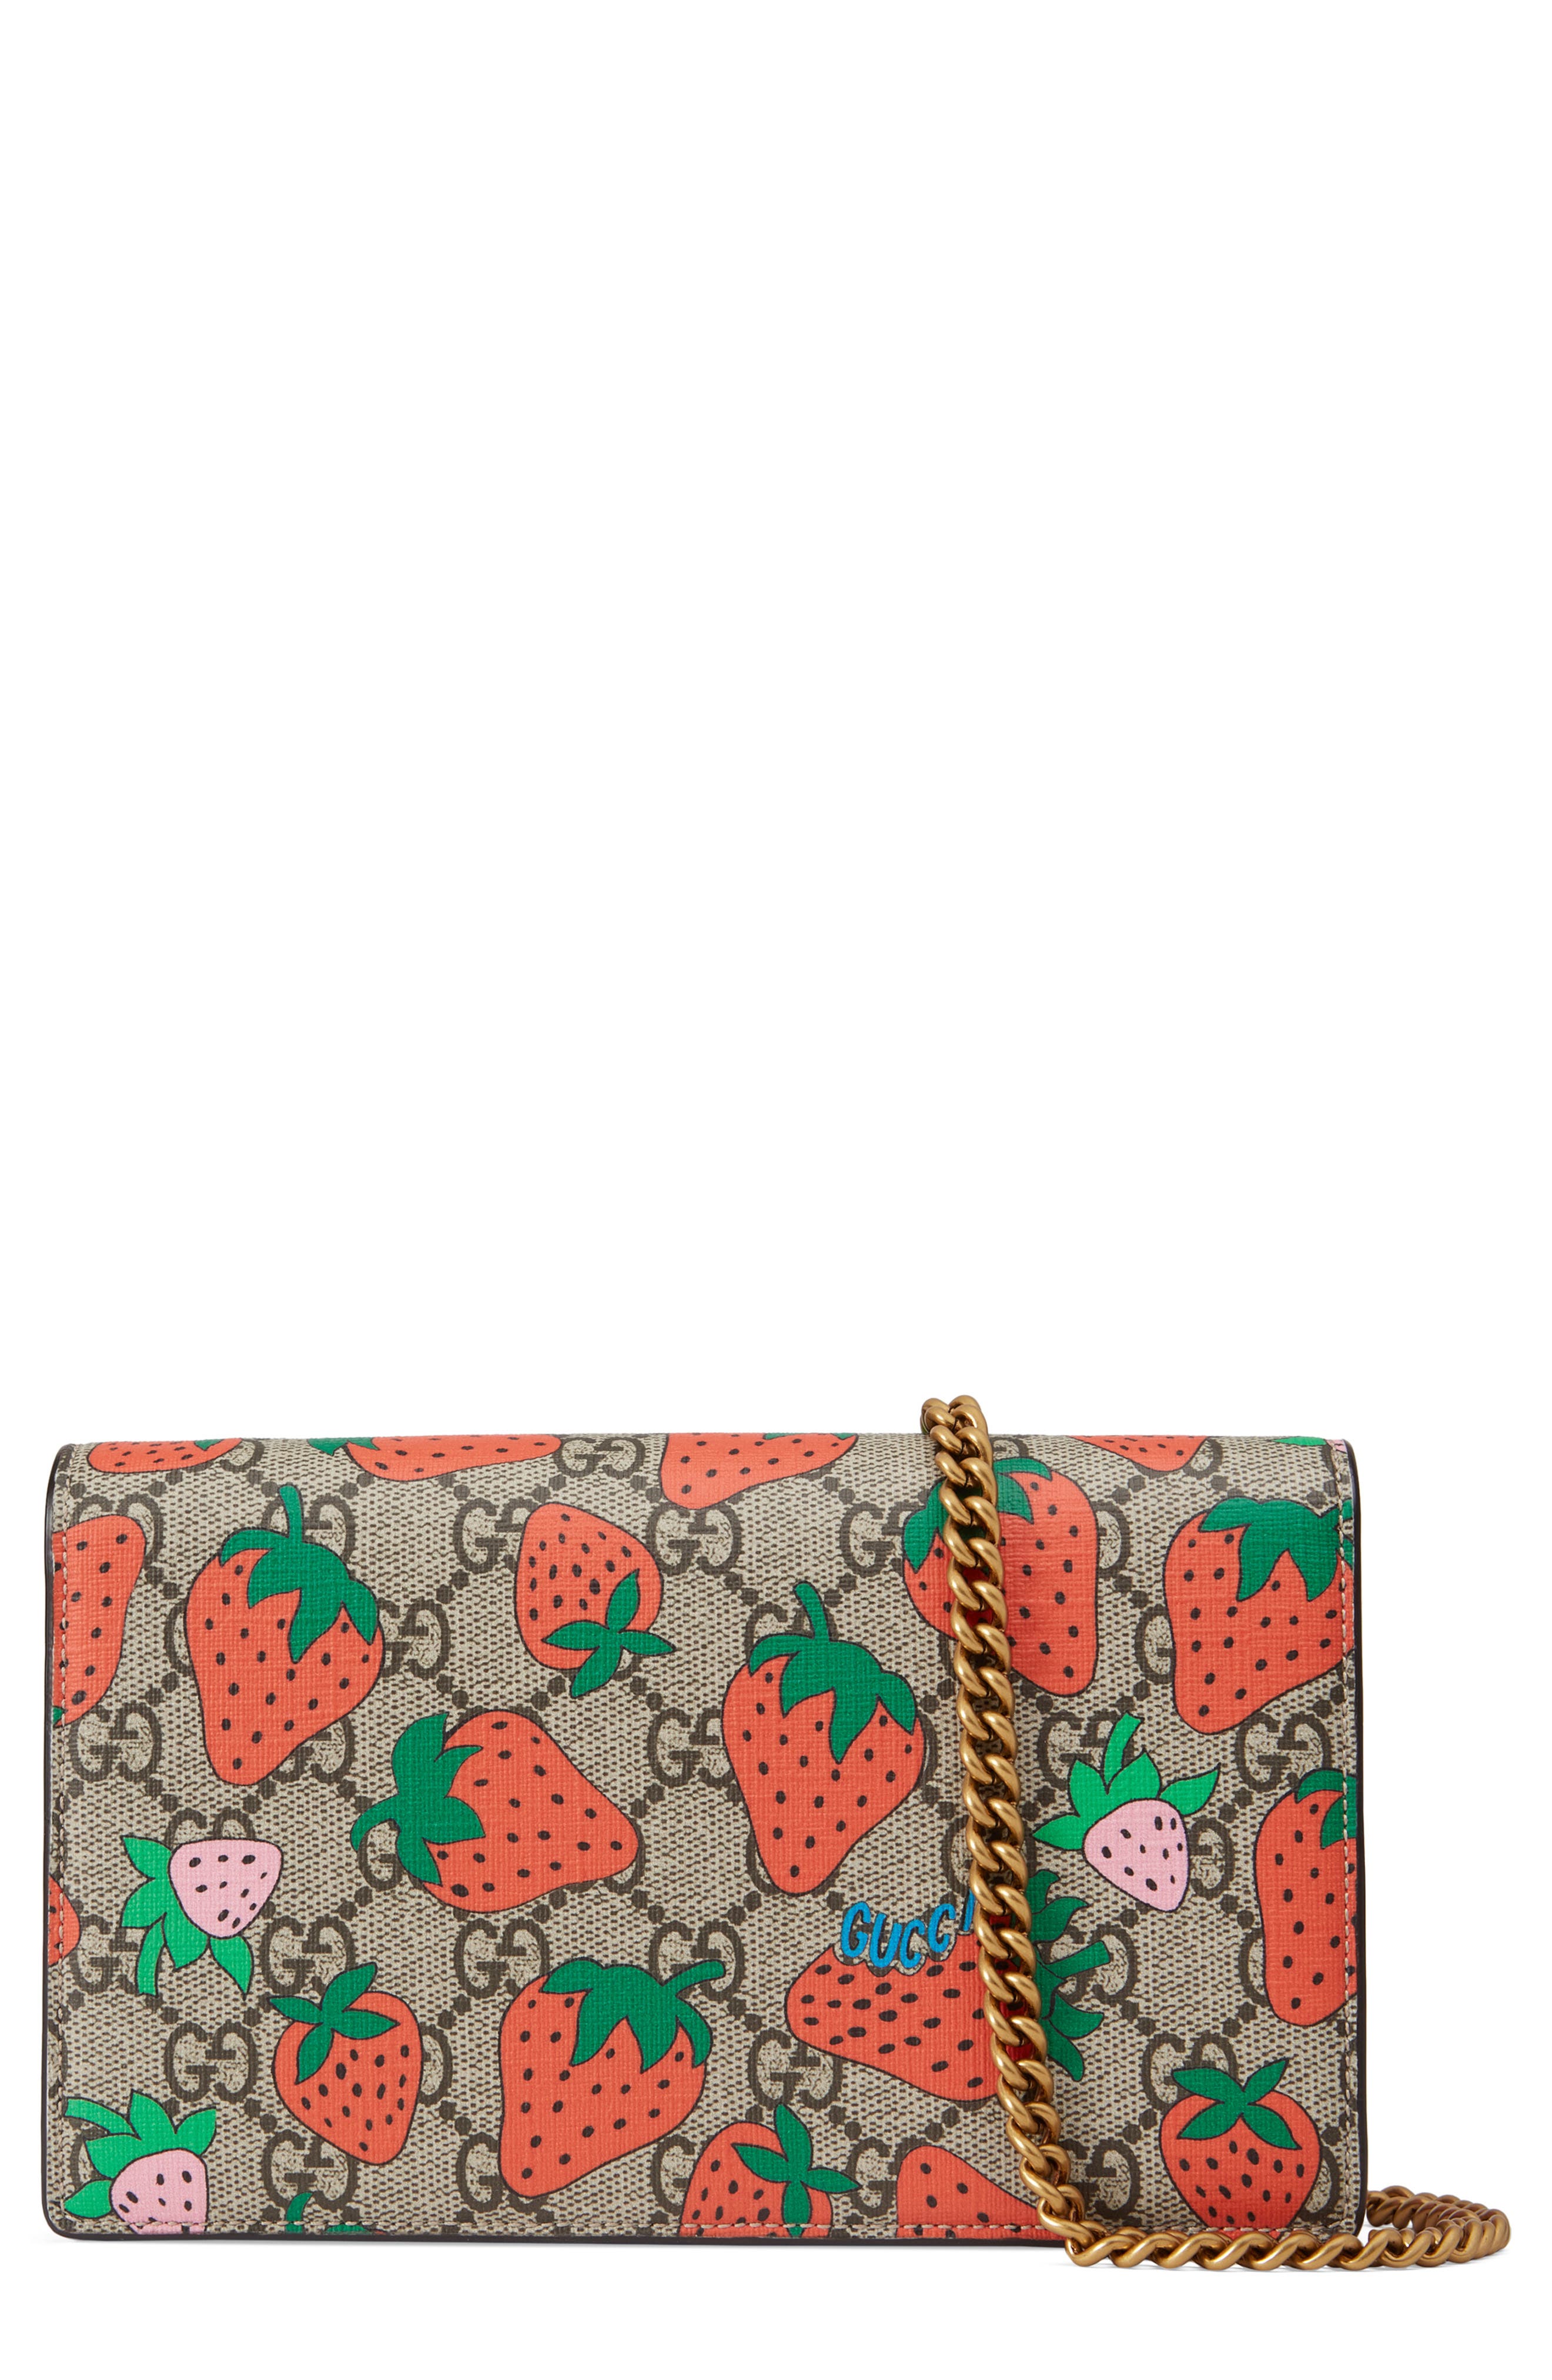 strawberry gucci purse